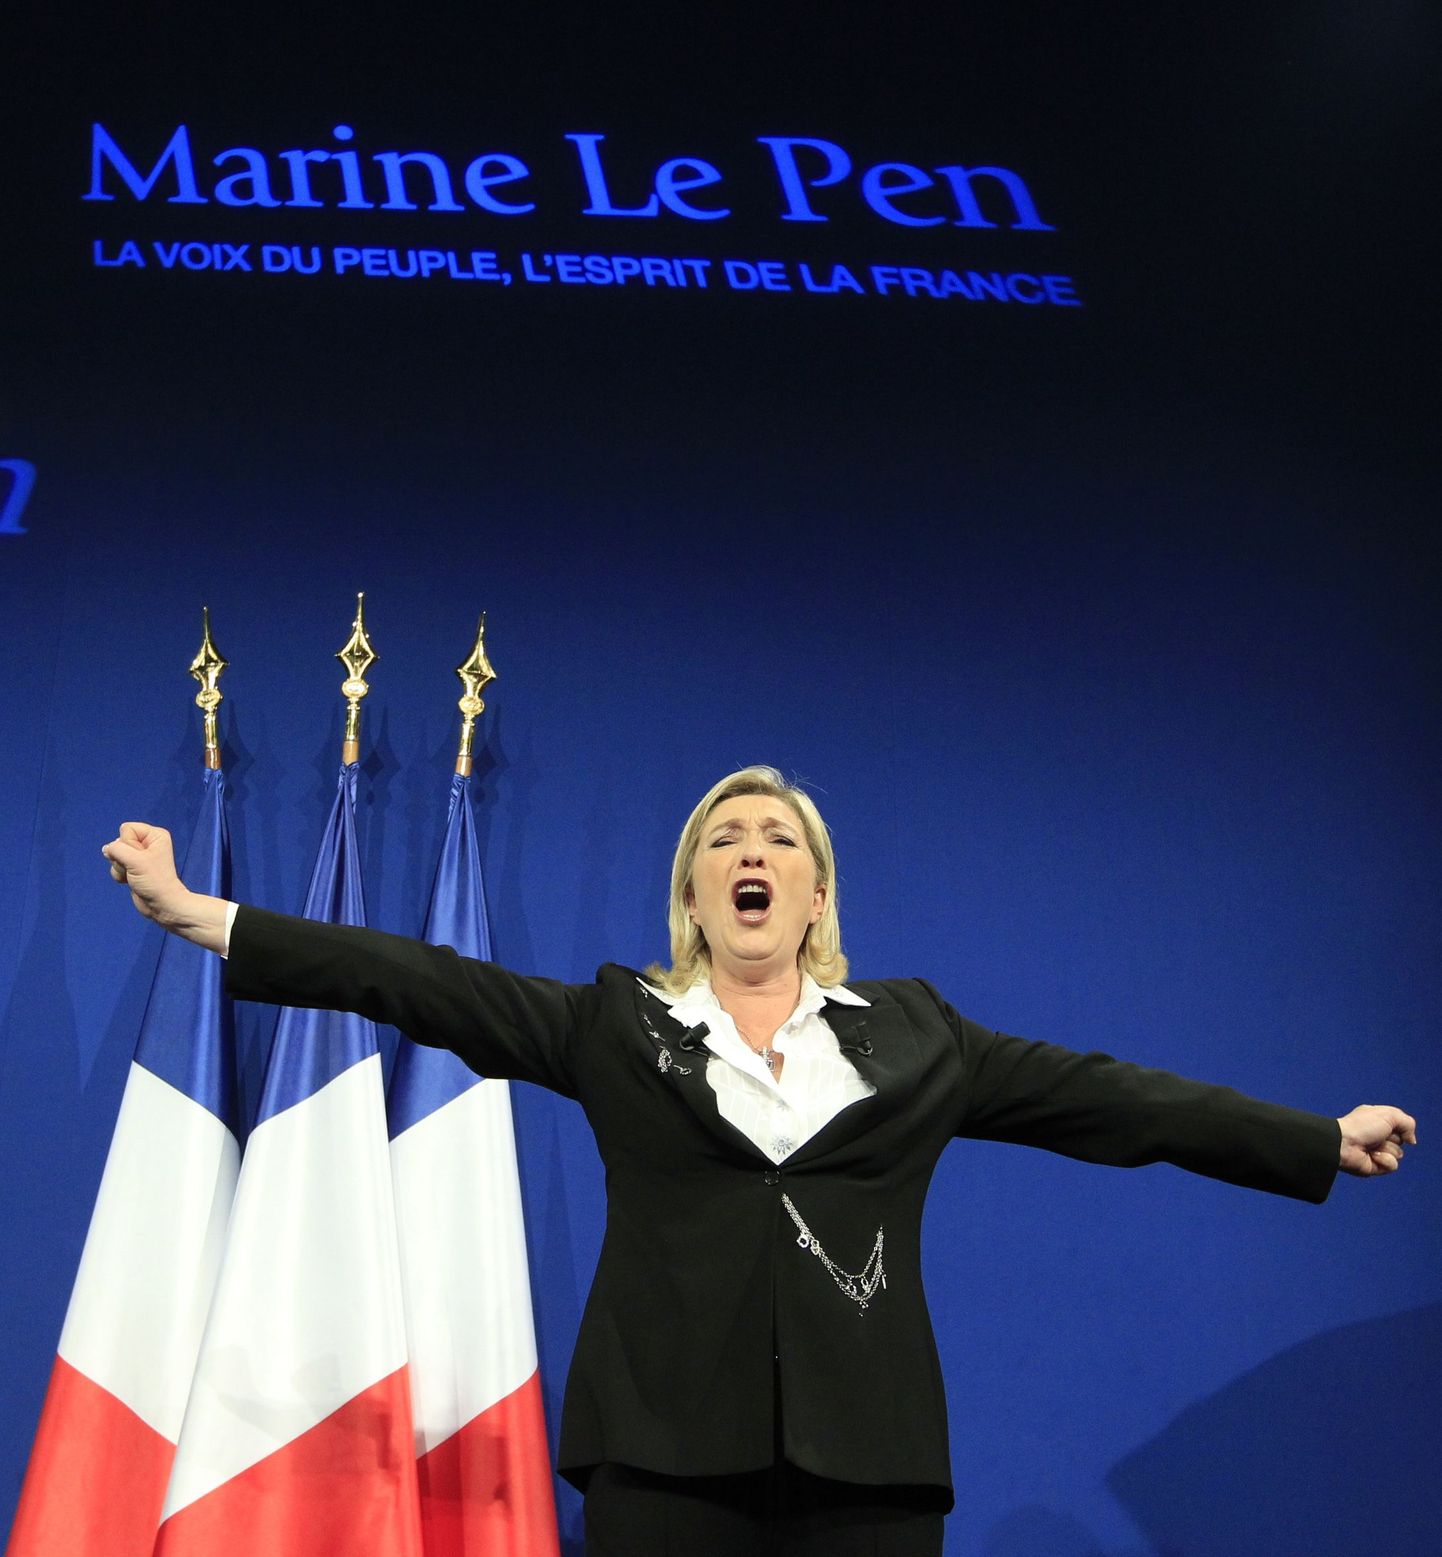 Radikaalsete poliitjõudude populaarsuse tõusu kinnitasid ka Prantsuse presidendivalimiste esimese vooru tulemused. Riigipeaks kandideerinud kümnest kandidaadist viis kuuluvad parem- või vasakäärmuslikule tiivale. Kokku kogusid need kandidaadid ligemale 35 protsenti häältest, kõige parema tulemuse saavutas Marine Le Pen (pildil).